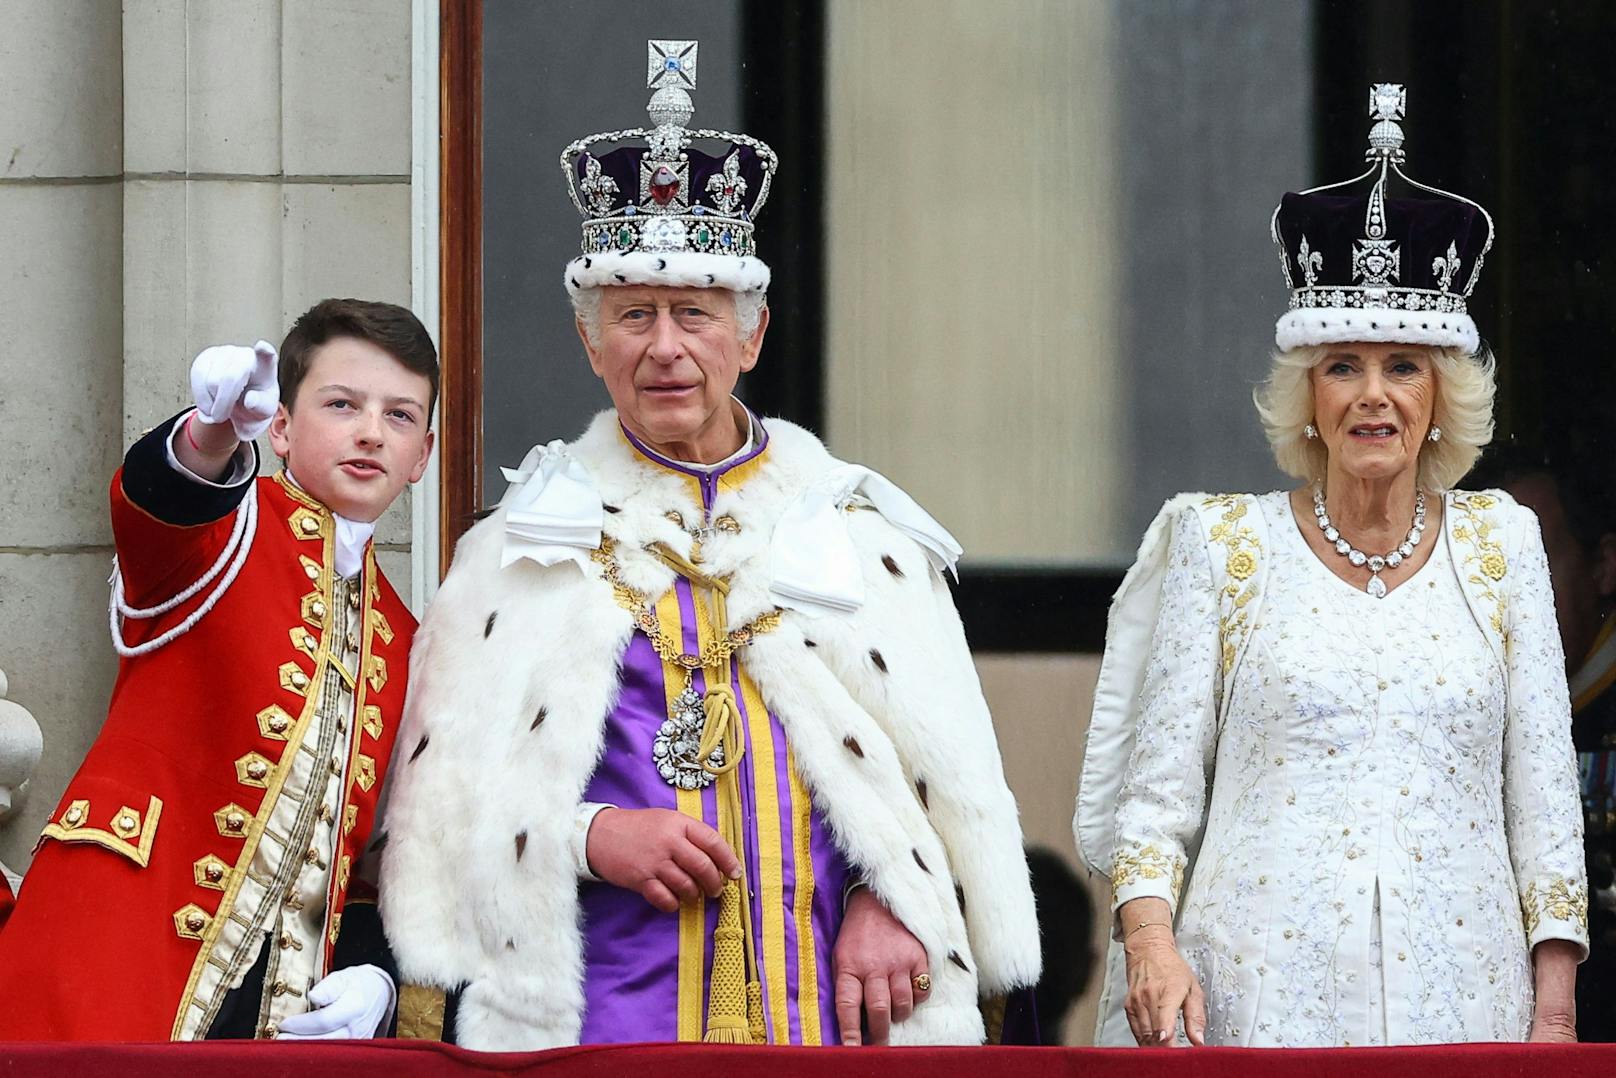 Der frisch gekrönte König Charles III. und Ehefrau, Queen Camilla, die sich am Balkon des Buckingham Palace der begeisterten Menschenmenge zeigten. Sein Page an der linken Seite, Ralph Tollemache.